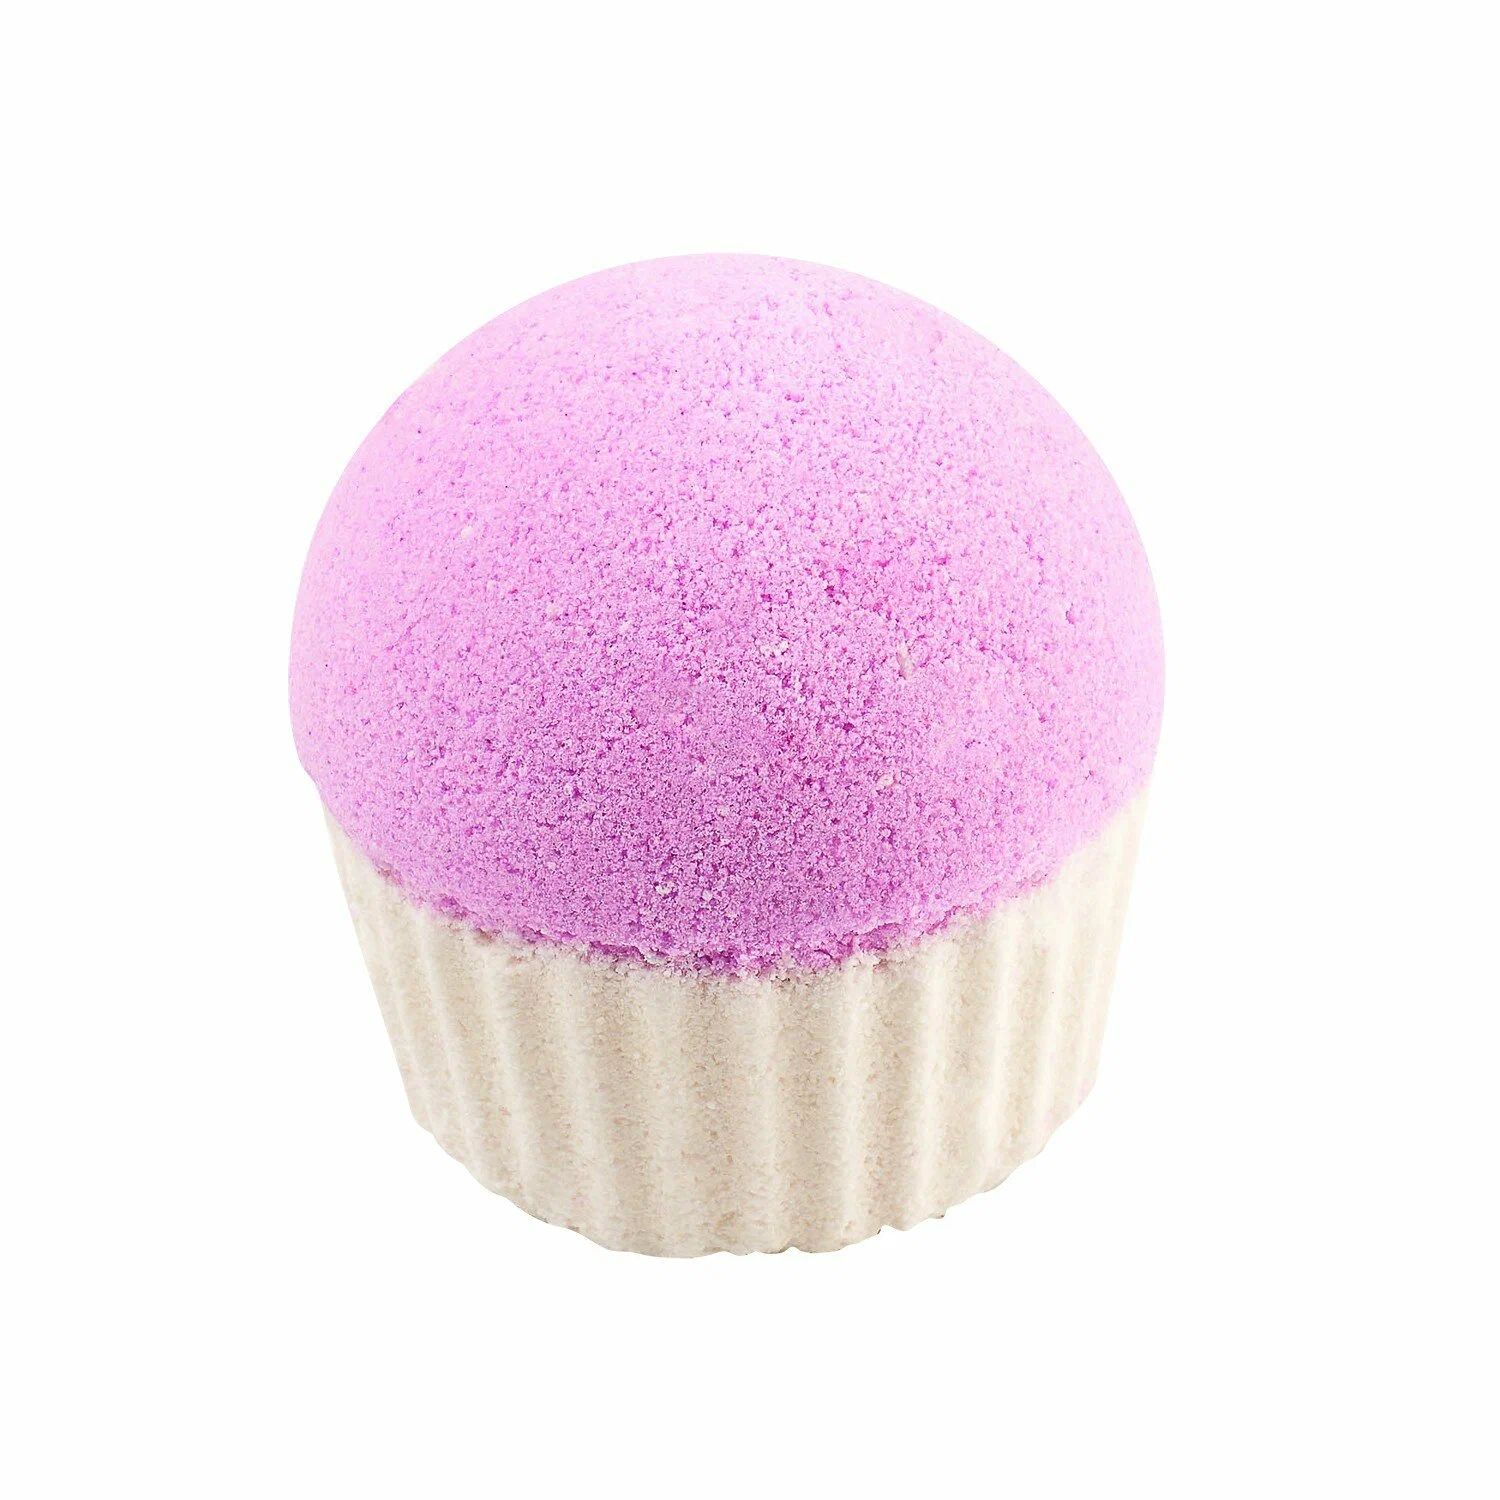 Гейзер для ванны Cafe mimi Клубничный капкейк, розовый, 140 г гейзер для ванны cafe mimi чернично малиновый пончик 140 г